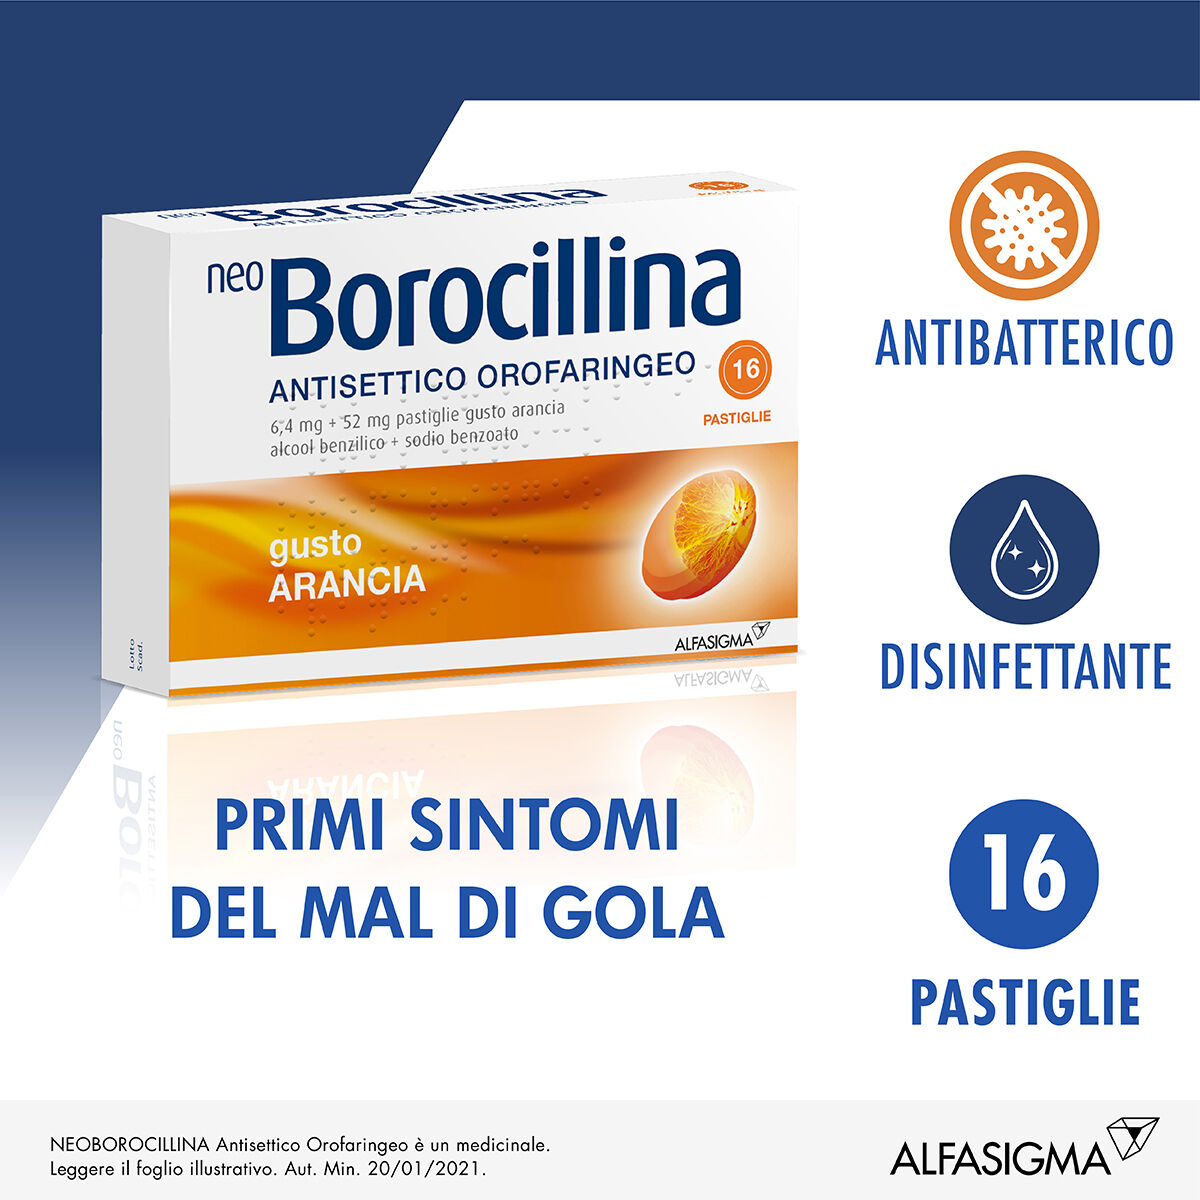 neoborocillina neo borocillina antisettico orofaringeo 6,4mg + 52mg arancia 16 pastiglie